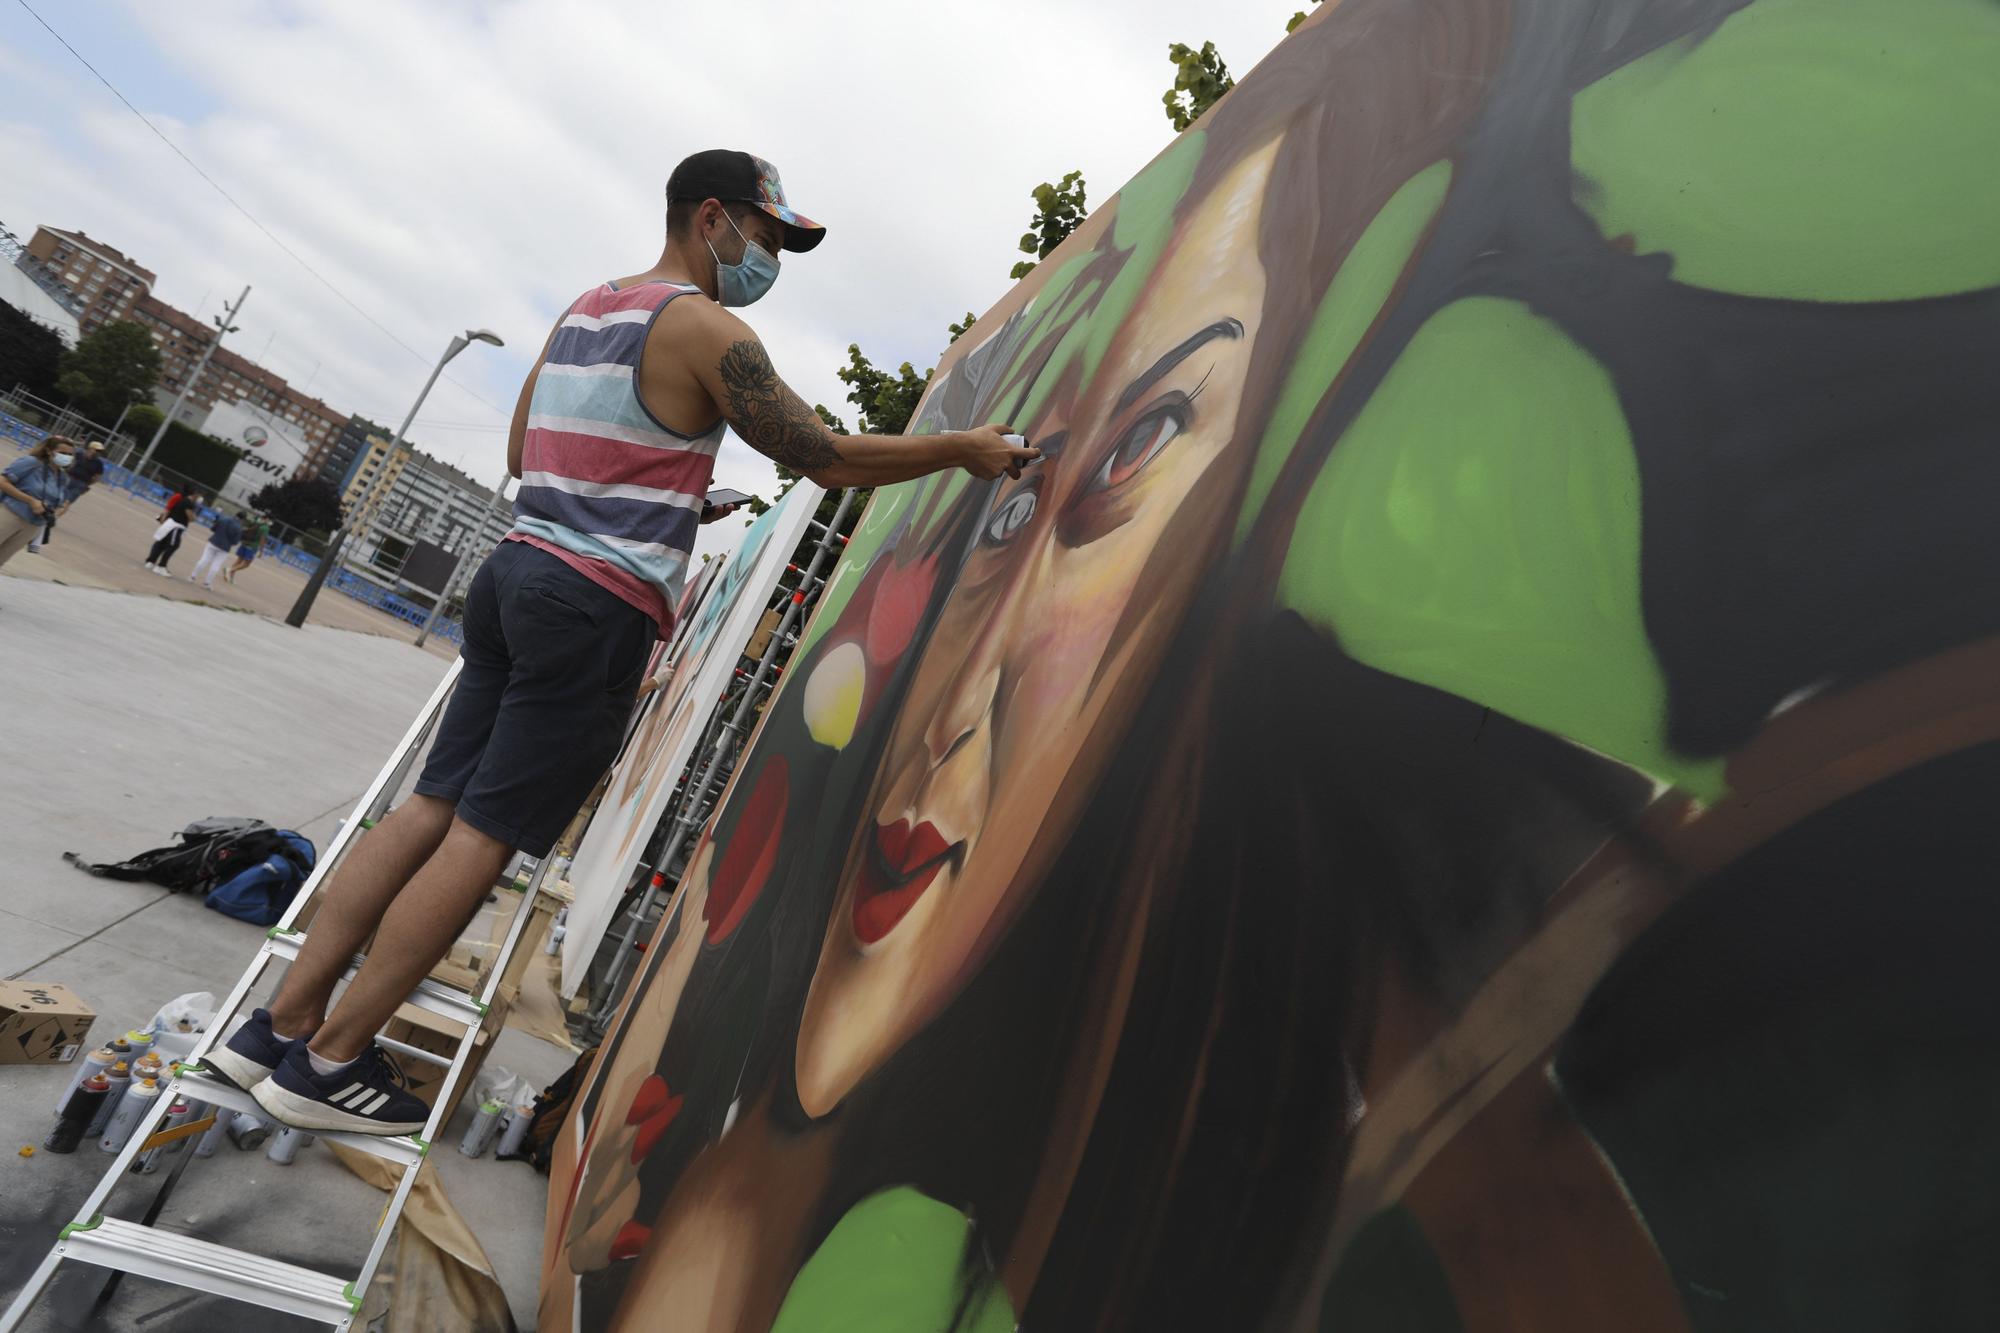 Los mejores grafiteros españoles del momento pulverizan su arte en Avilés